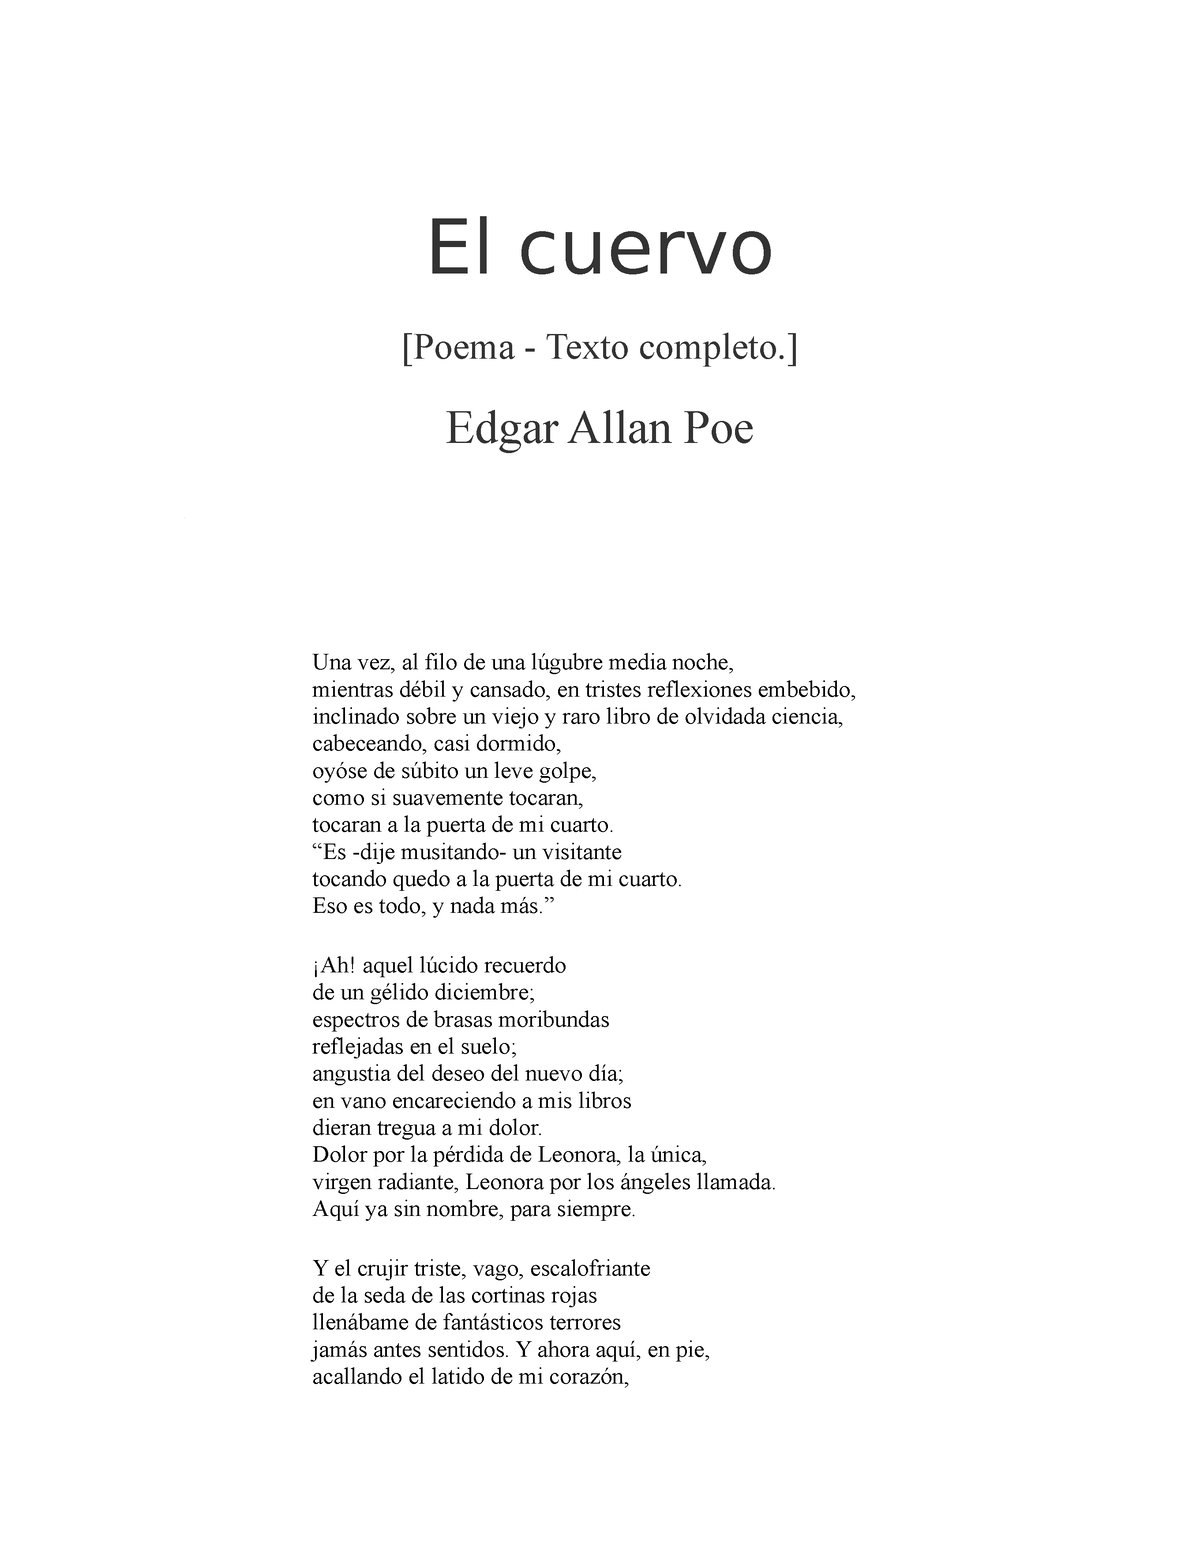 El Cuervo Alan Poe Poema Escrito Por Edgardo Alan Poet El Cuervo